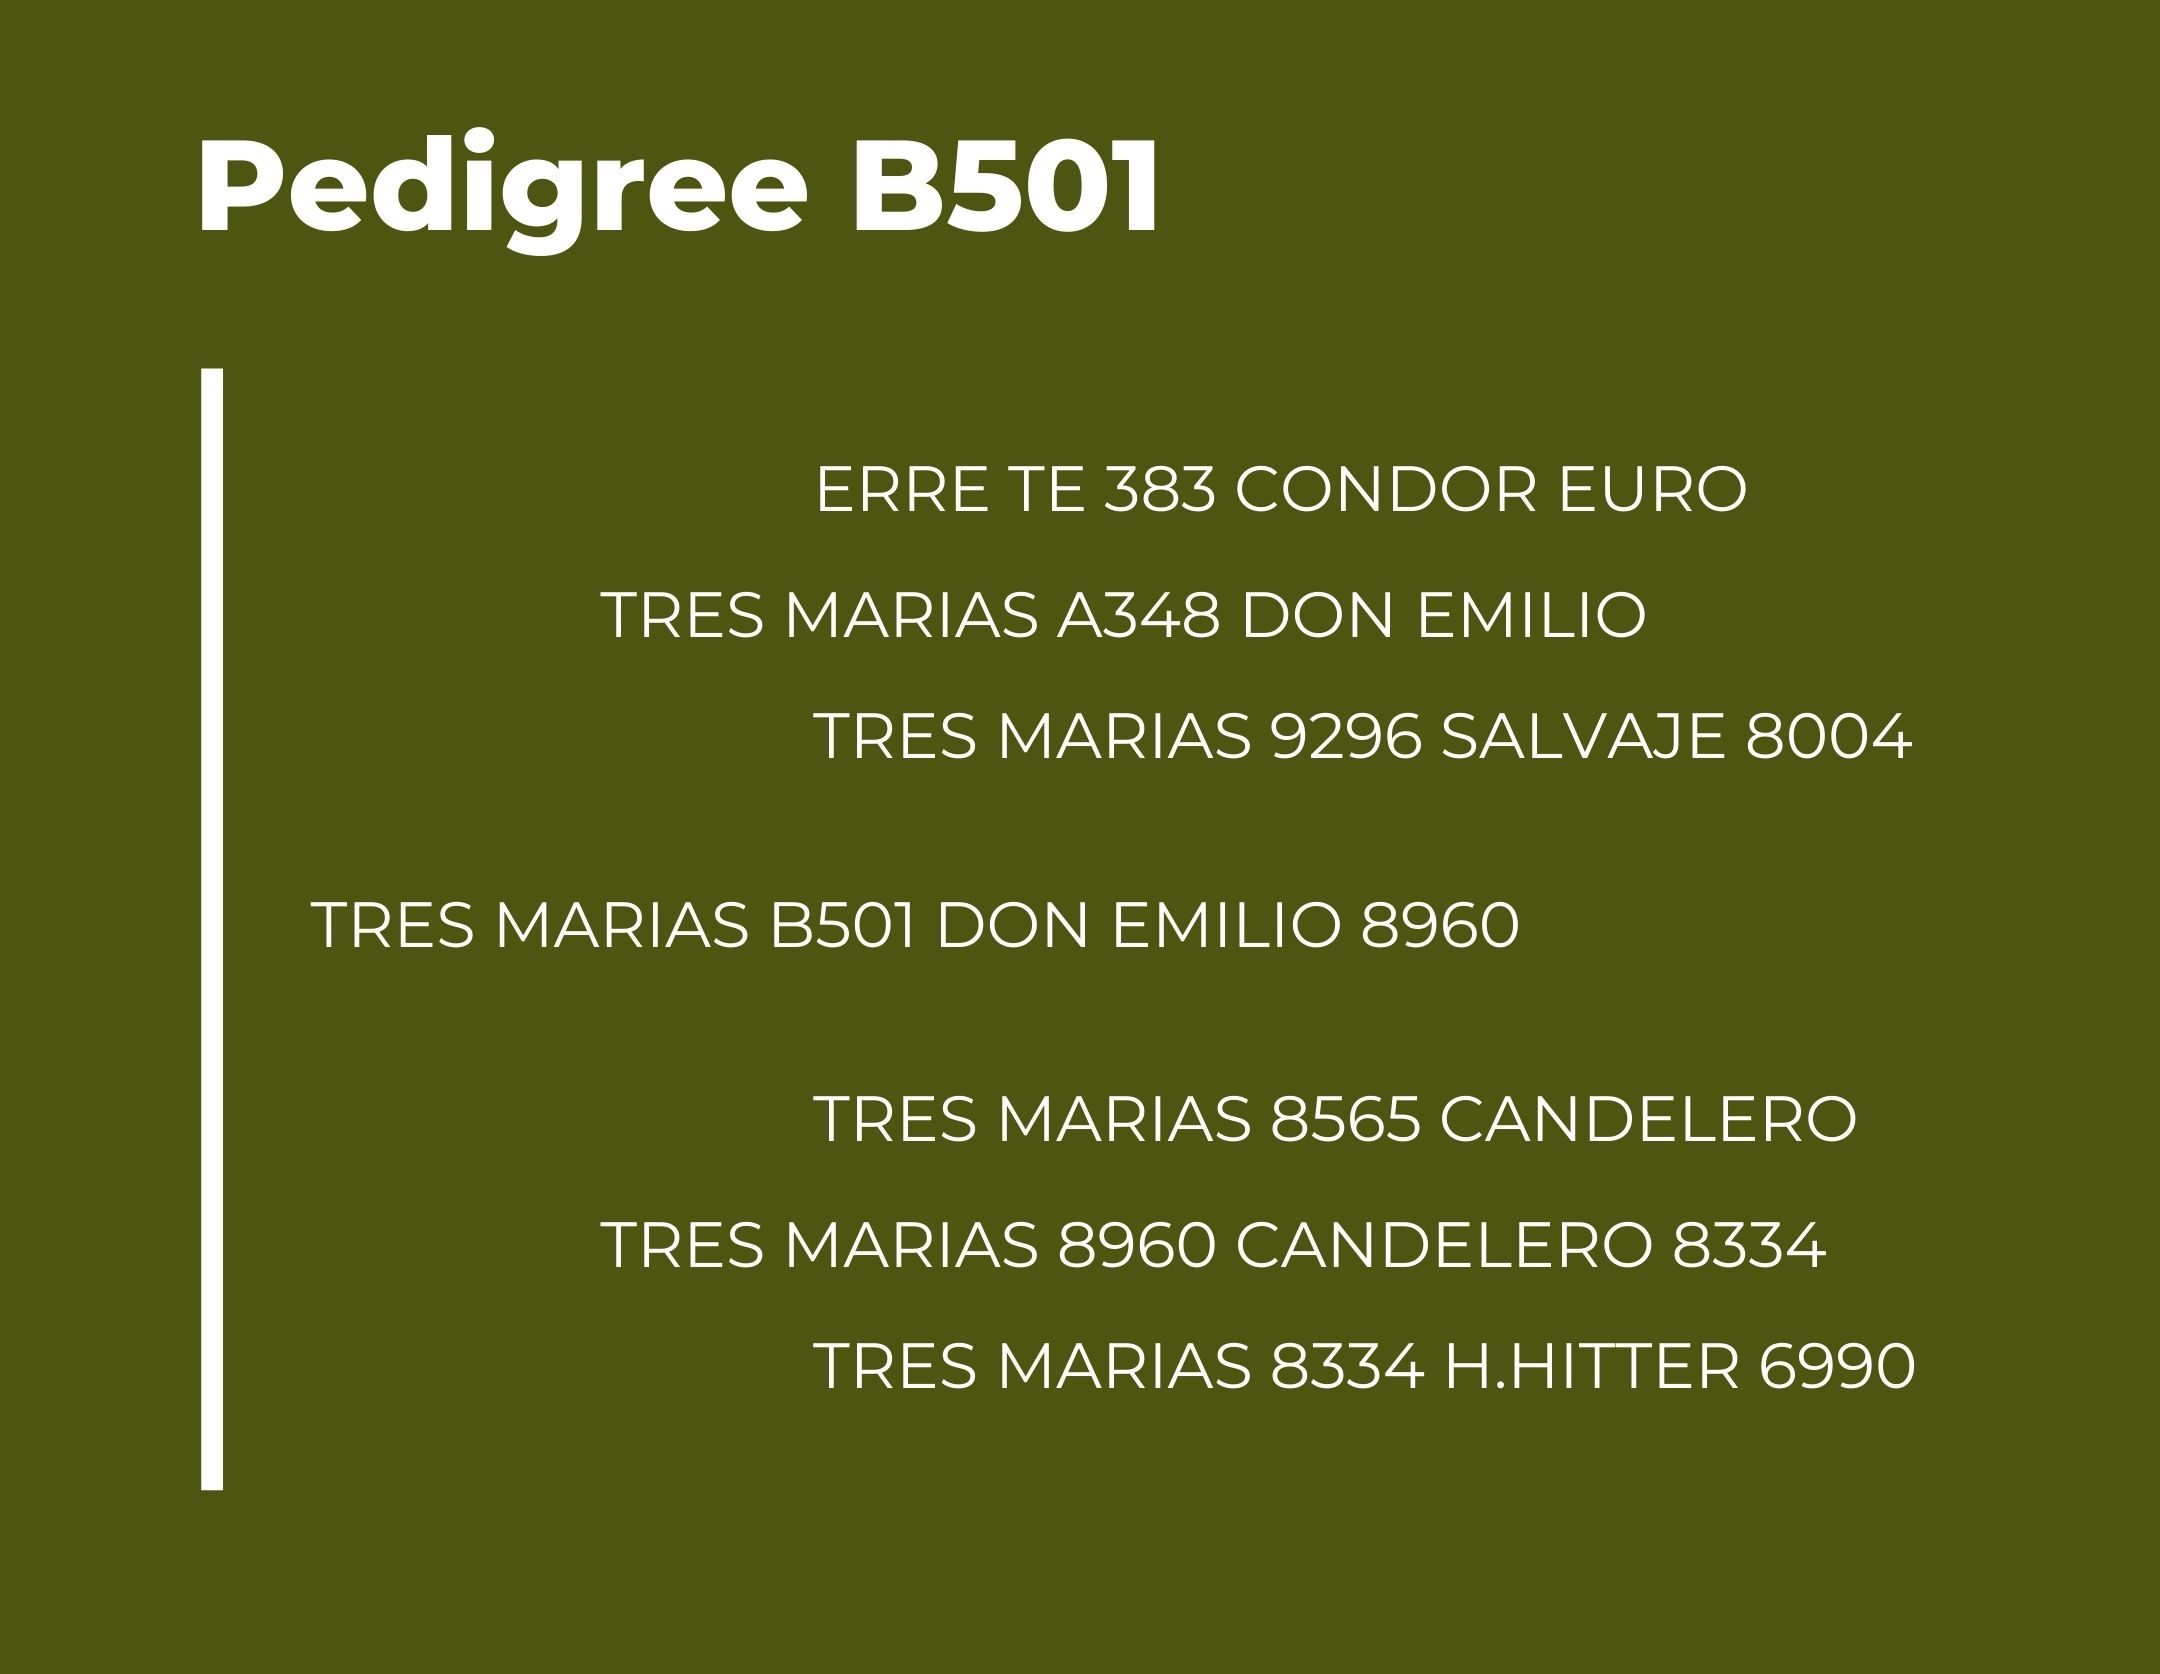 TM B501 pedigree